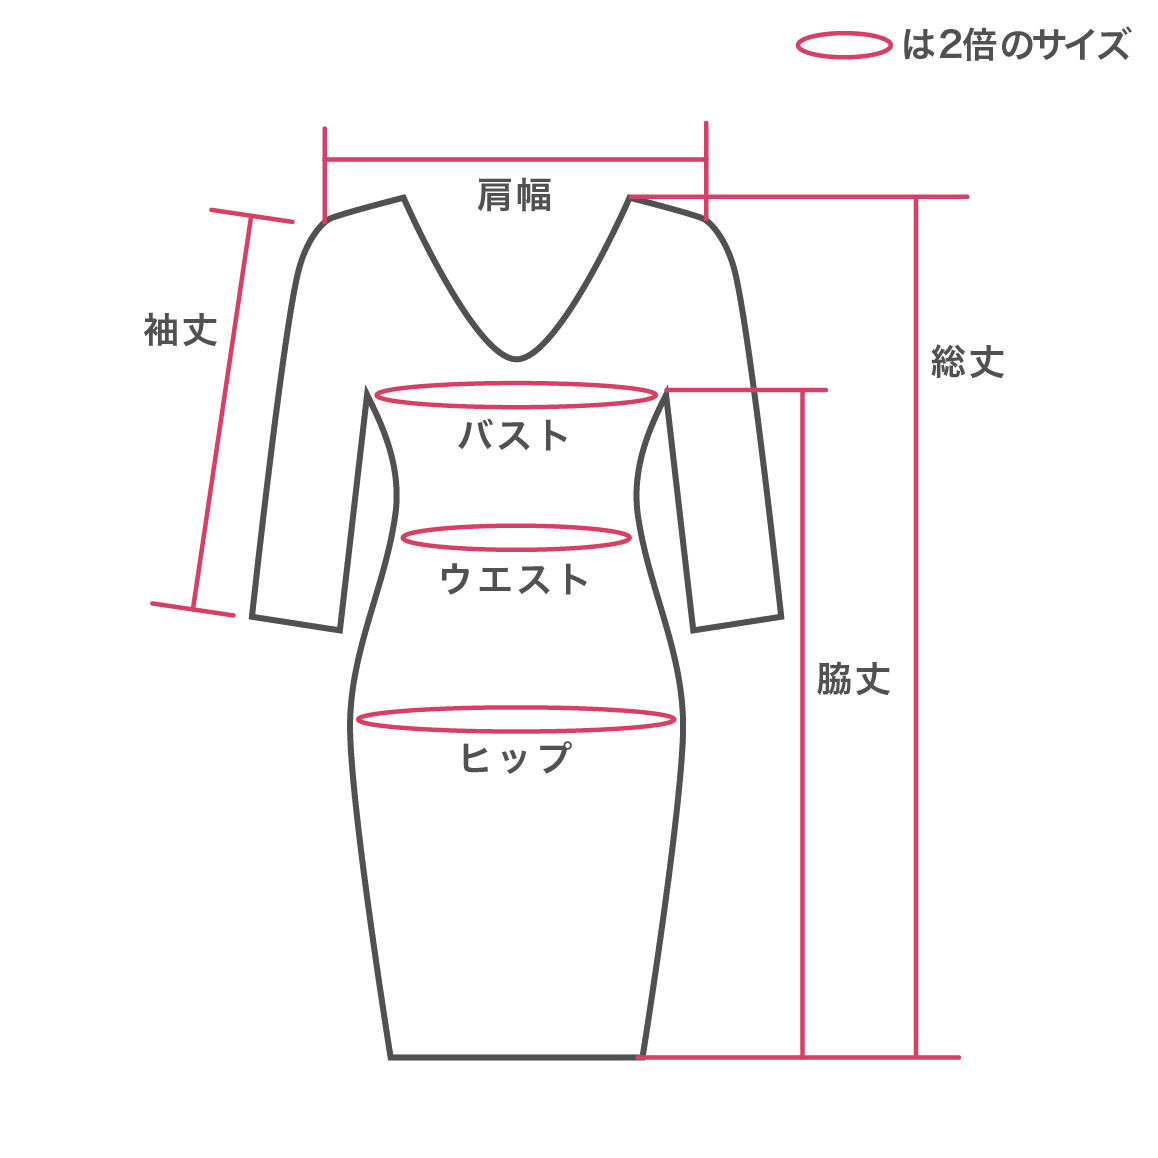 袖ありドレスの測り方